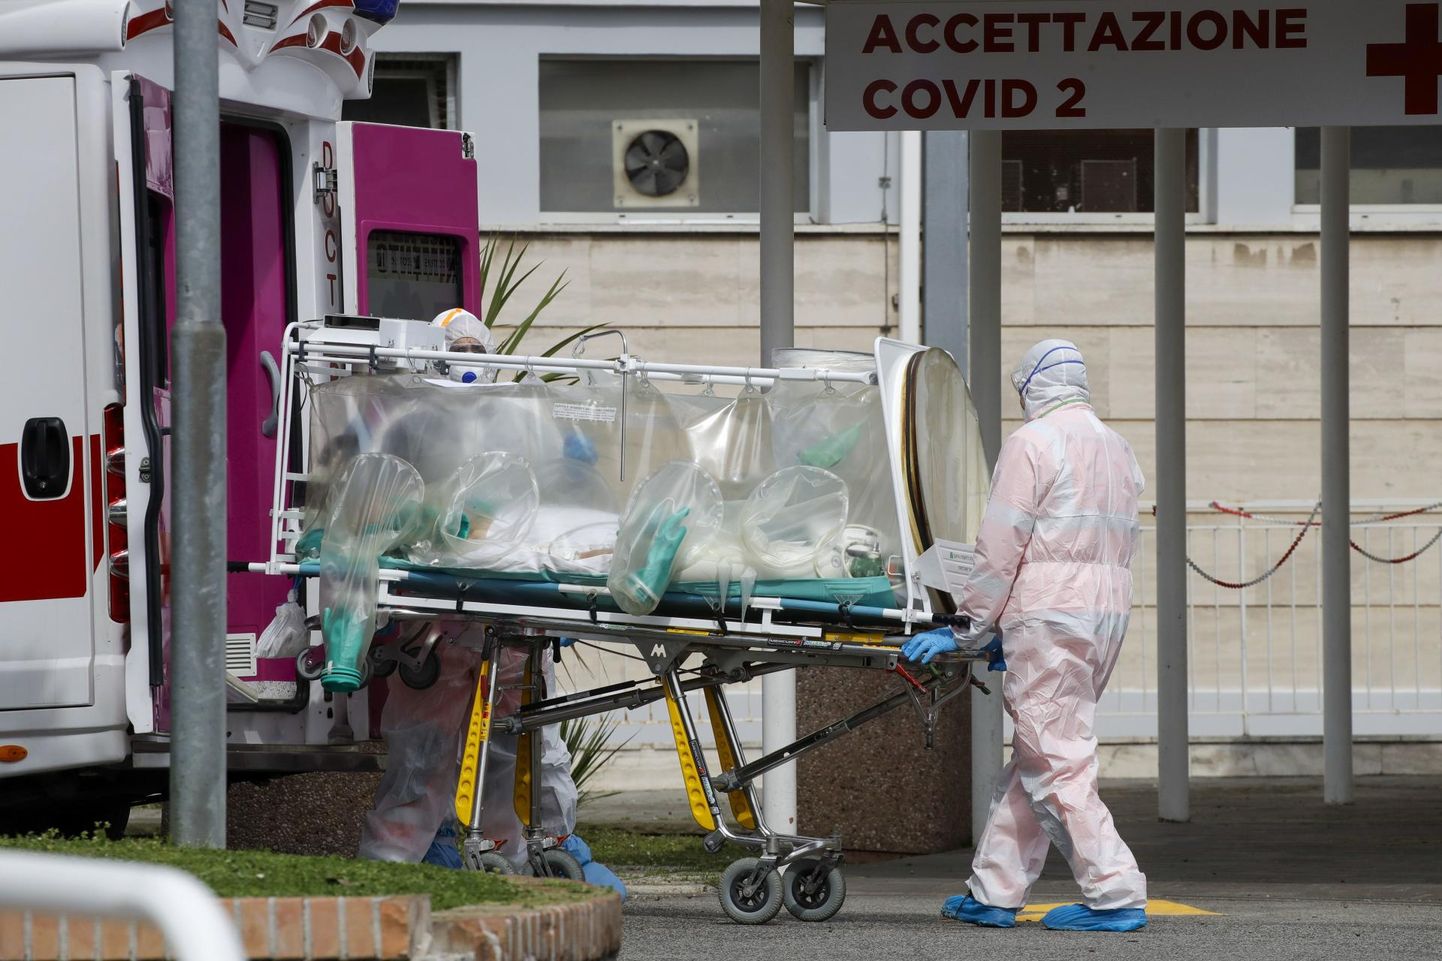 Koroonaviirusega patsiendi haiglasse toimetamine Roomas. Itaalias oli viirus eilseks nõudnud üle 2500 inimelu.